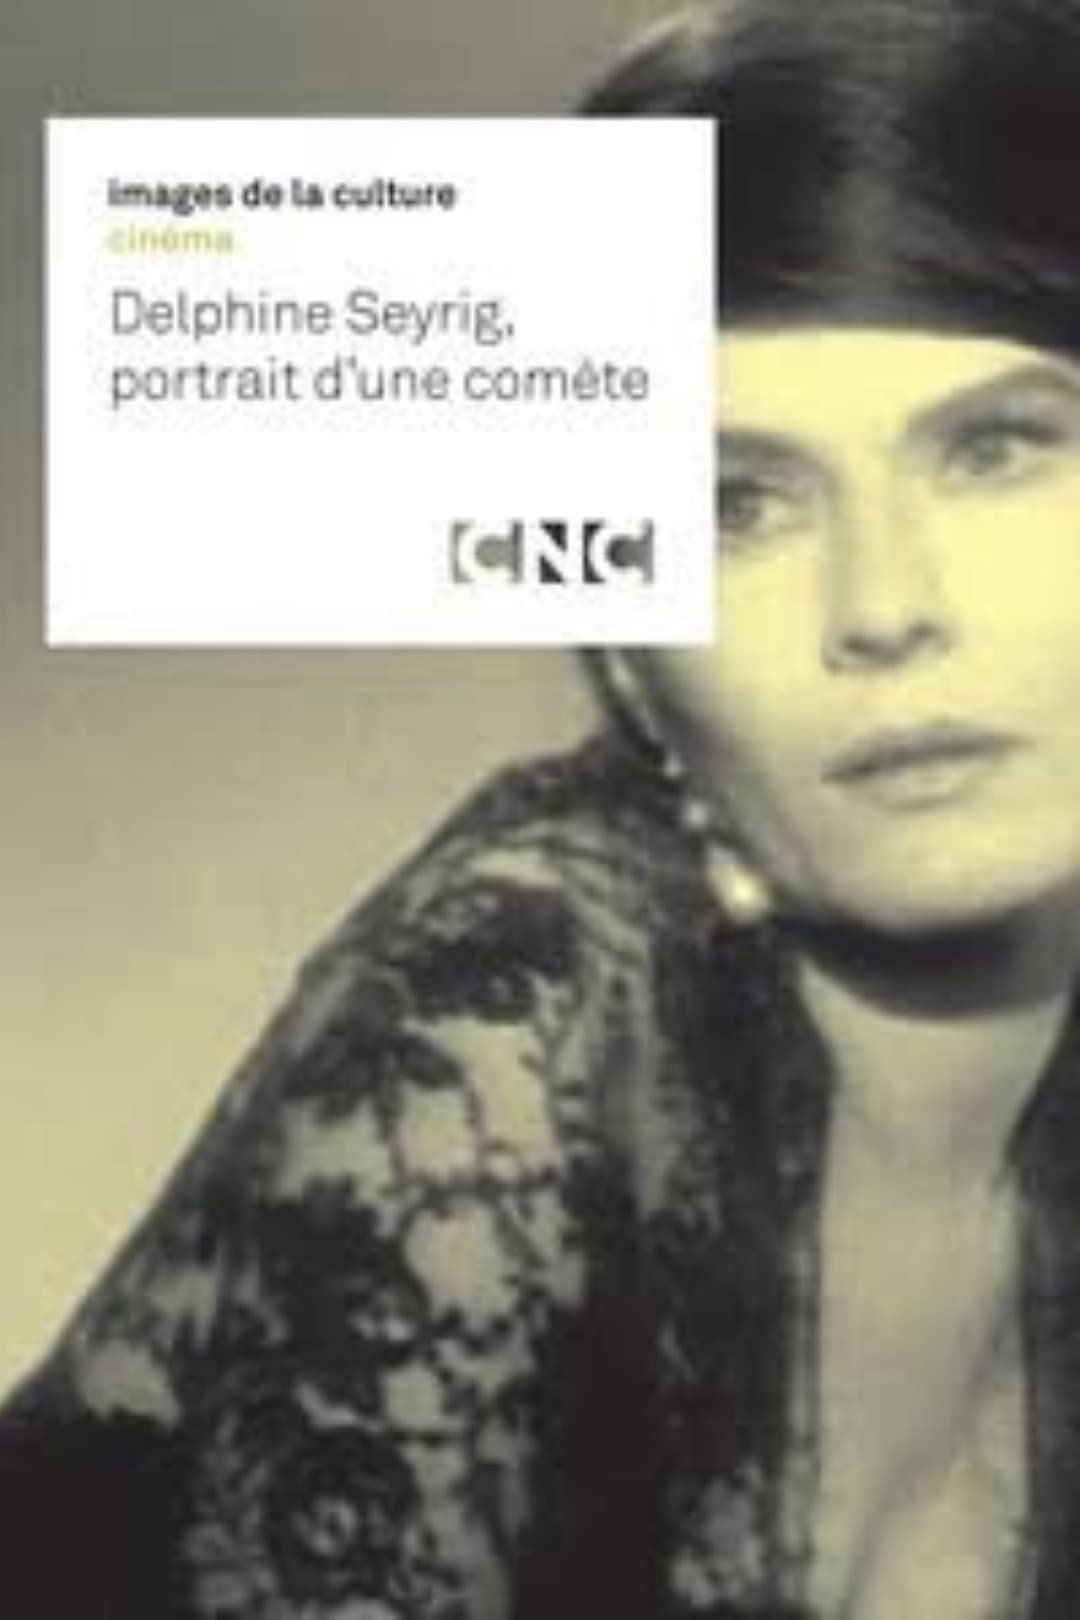 Delphine Seyrig, portrait d'une comète